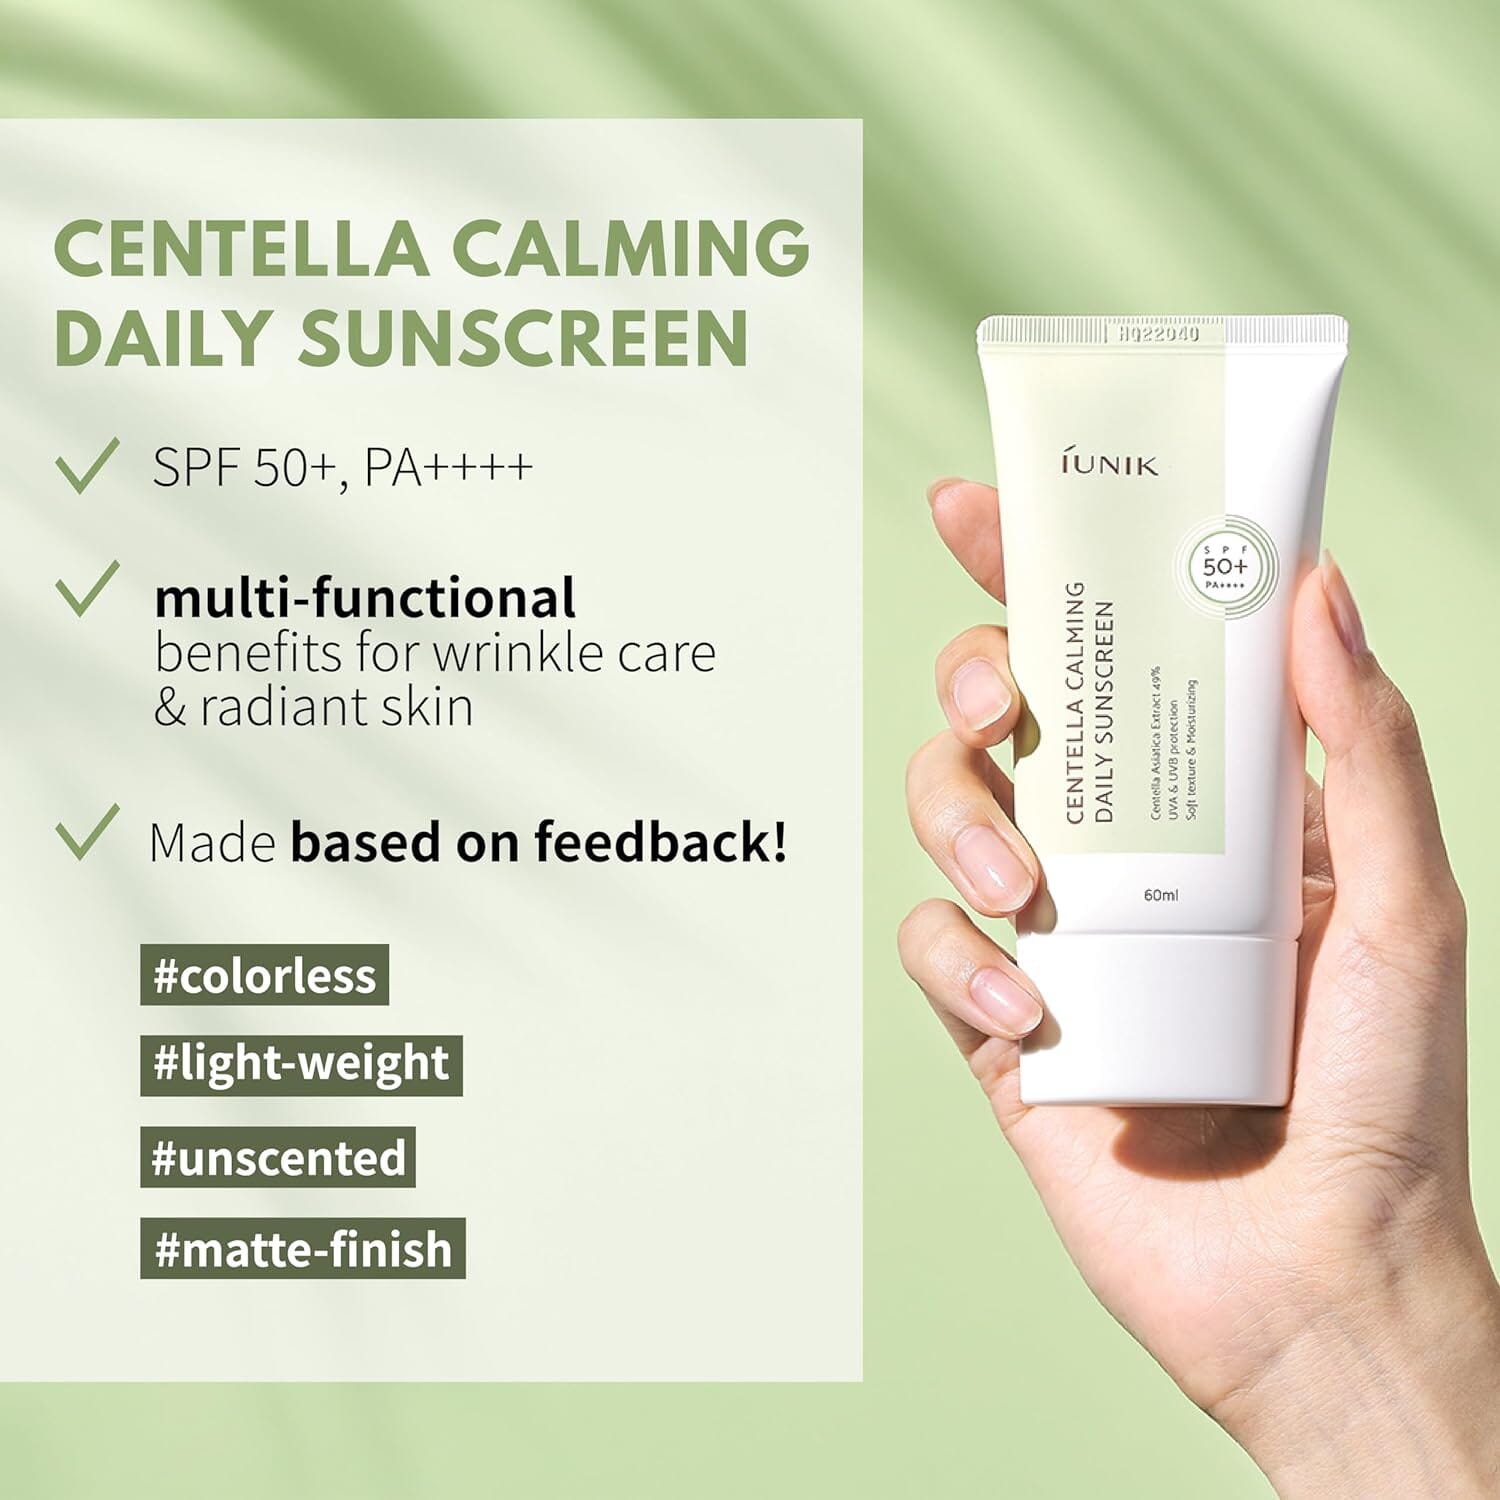 iUNIK Centella Calming Daily Sunscreen SPF 50+ PA++++ 60ml Skin Care iUNIK ORION XO Sri Lanka